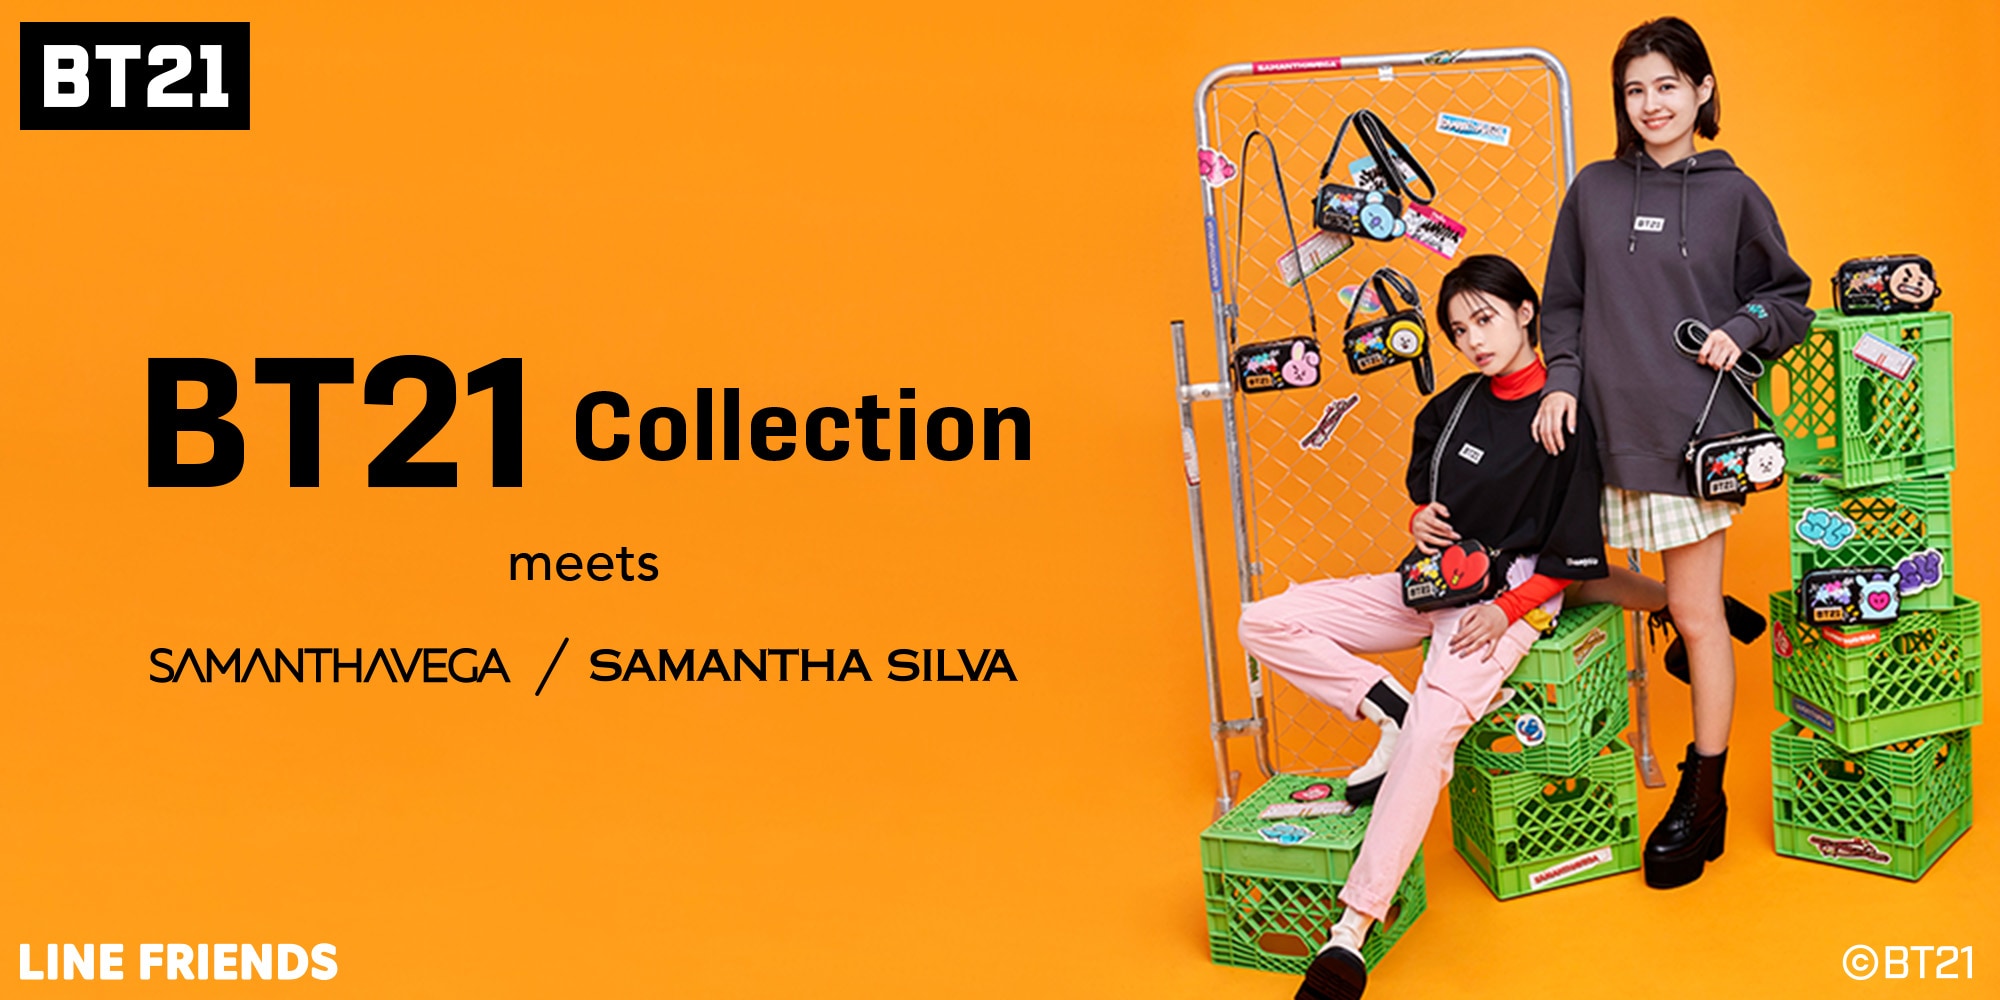 BT21 Collection meets SAMANTHAVEGA | SAMANTHA SILVA